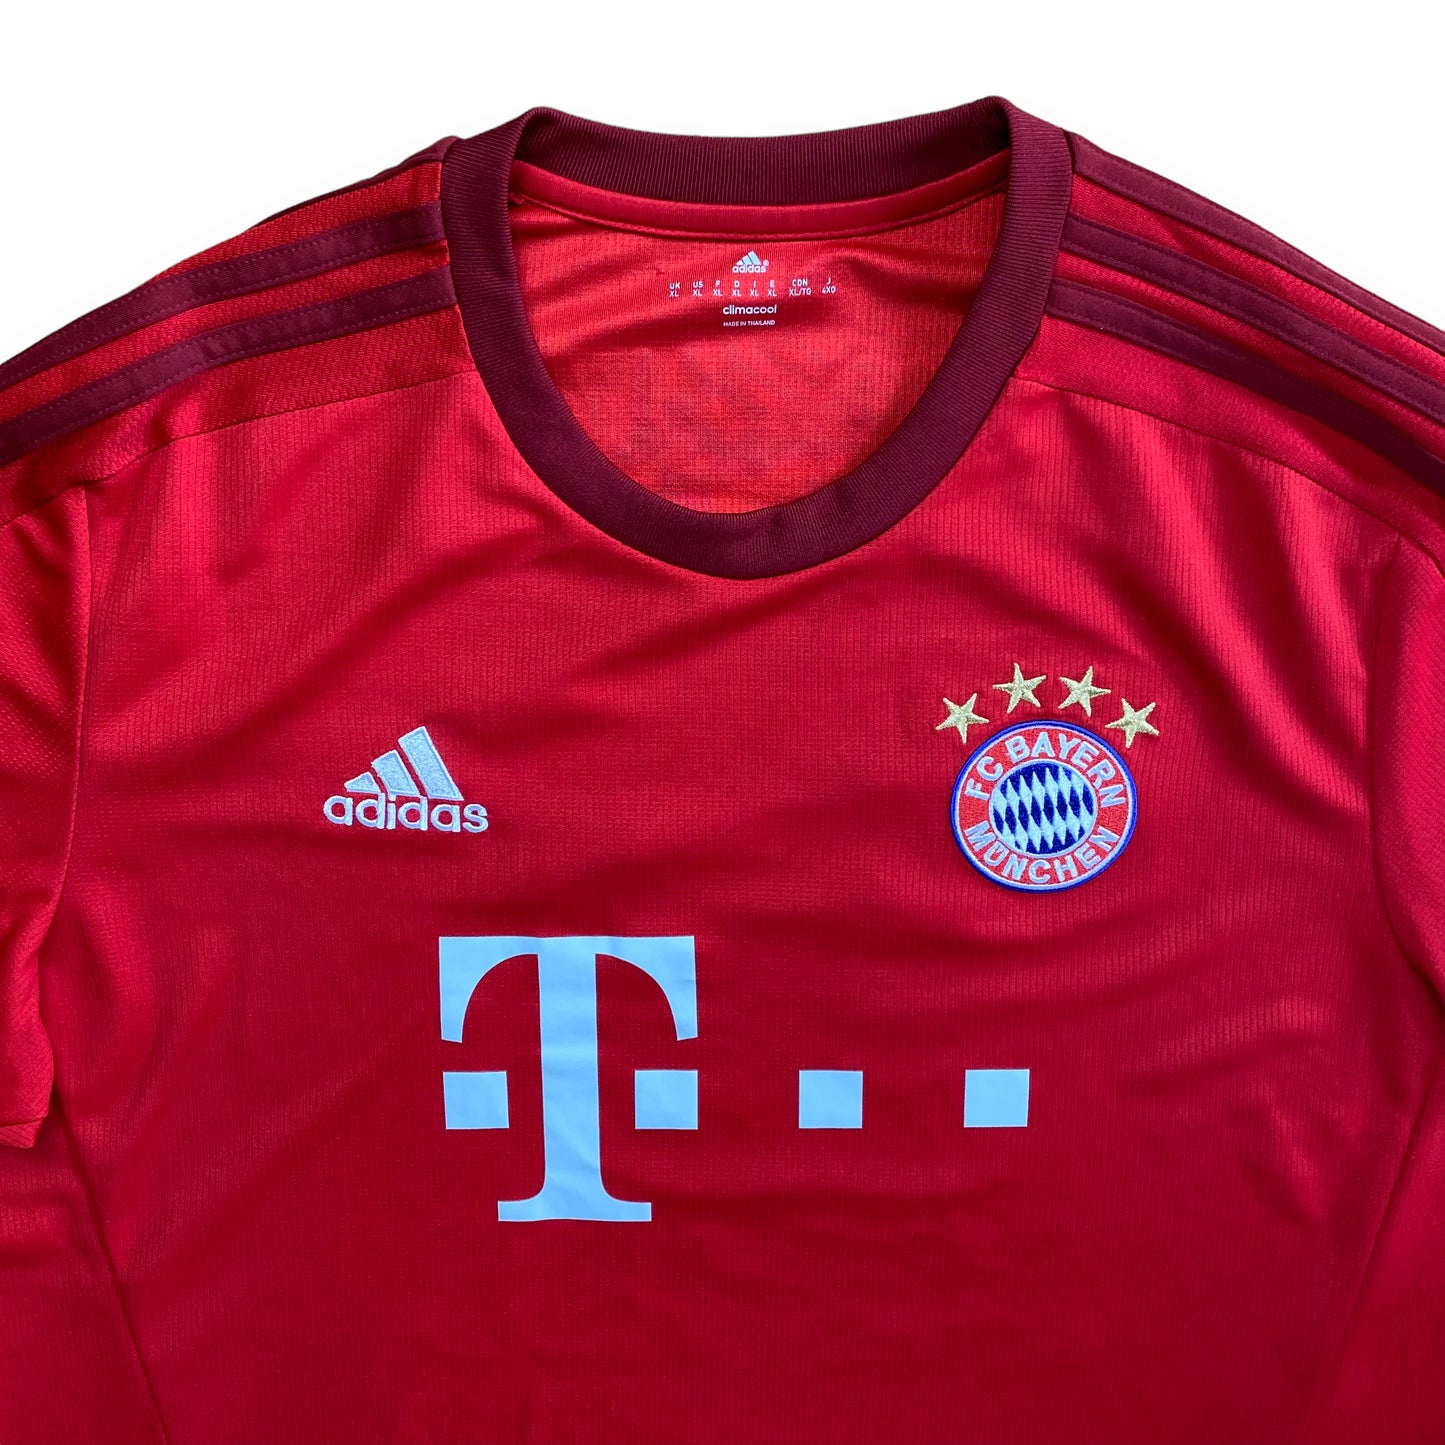 Bayern Munich 2015-16 Home Shirt (XL) Boateng #17